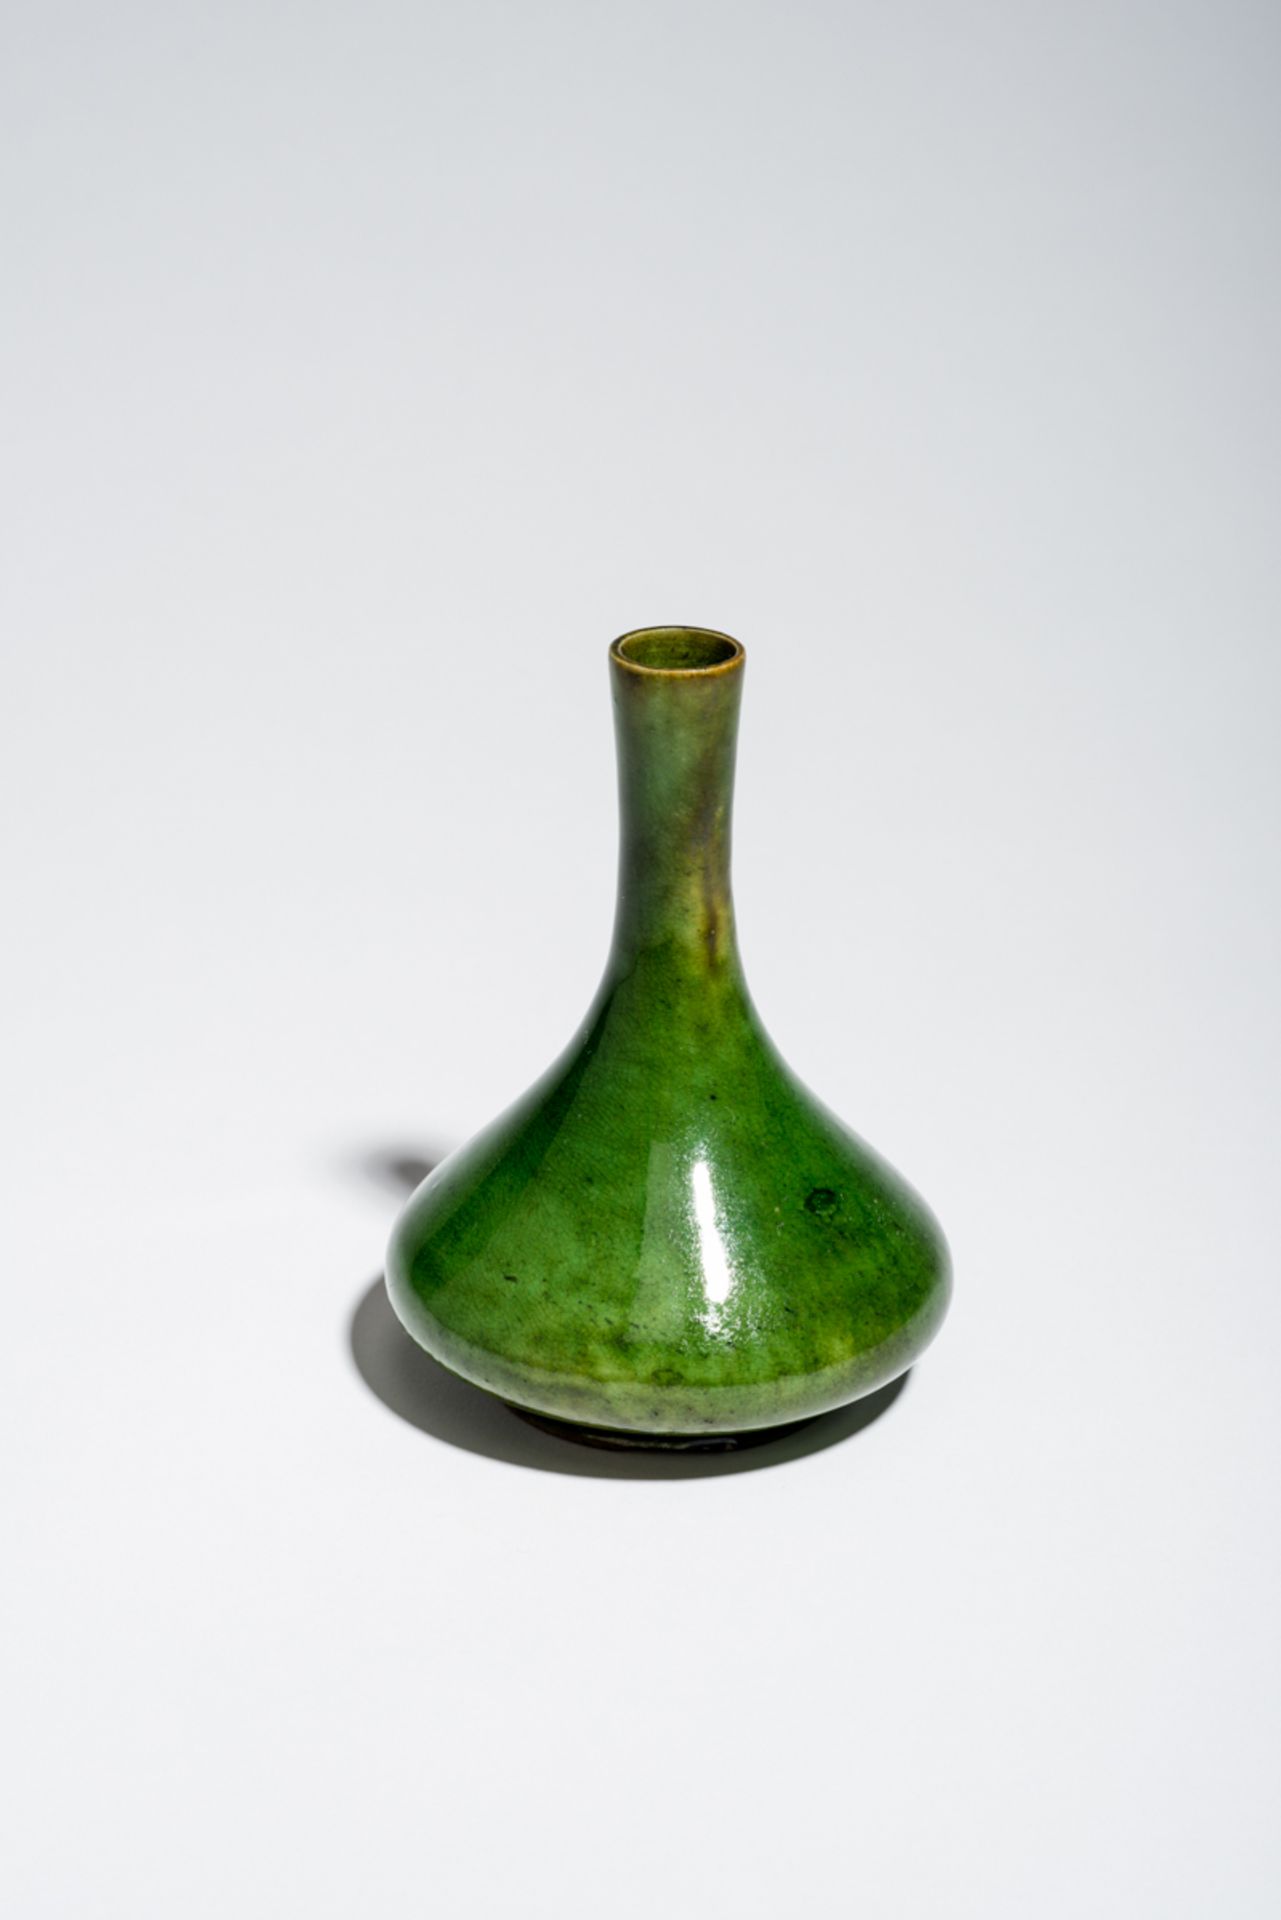 ELEGANT GEFORMTES VÄSCHENGrün glasiertes Porzellan. China, Qing, 19. Jh.Sehr schöne Glasurfarbe und - Bild 2 aus 3